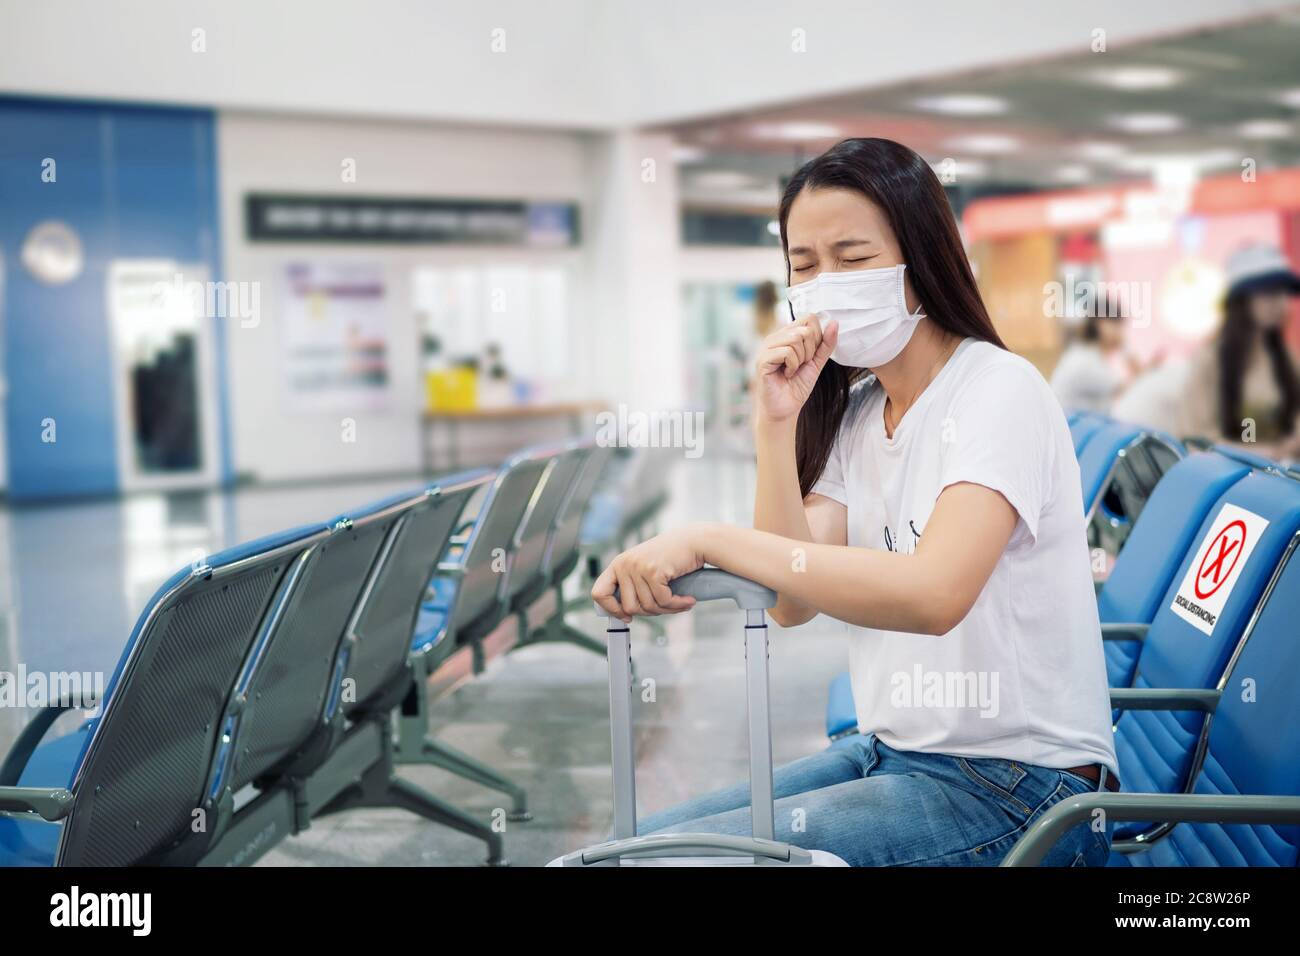 Les touristes asiatiques se sentent malades, toussant, portant un masque et s'assoient sur une chaise avec une distanciation sociale pour prévenir une pandémie pendant les déplacements au terminal de l'aéroport. Banque D'Images